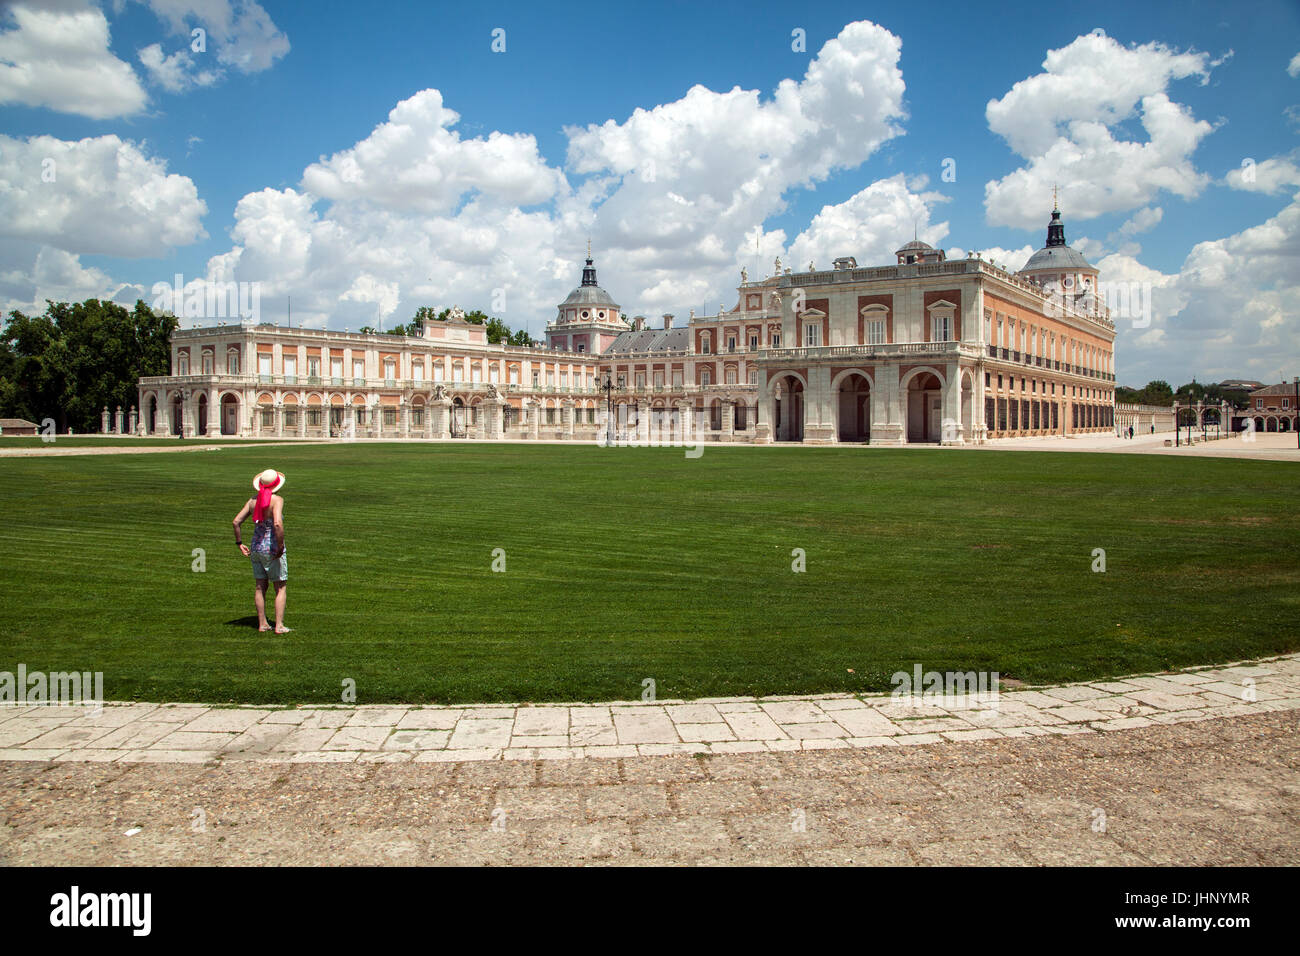 Woman looking at the du Palais Royal d'Aranjuez qui est la résidence de printemps de la Famille Royale espagnole située sur le Tage Banque D'Images